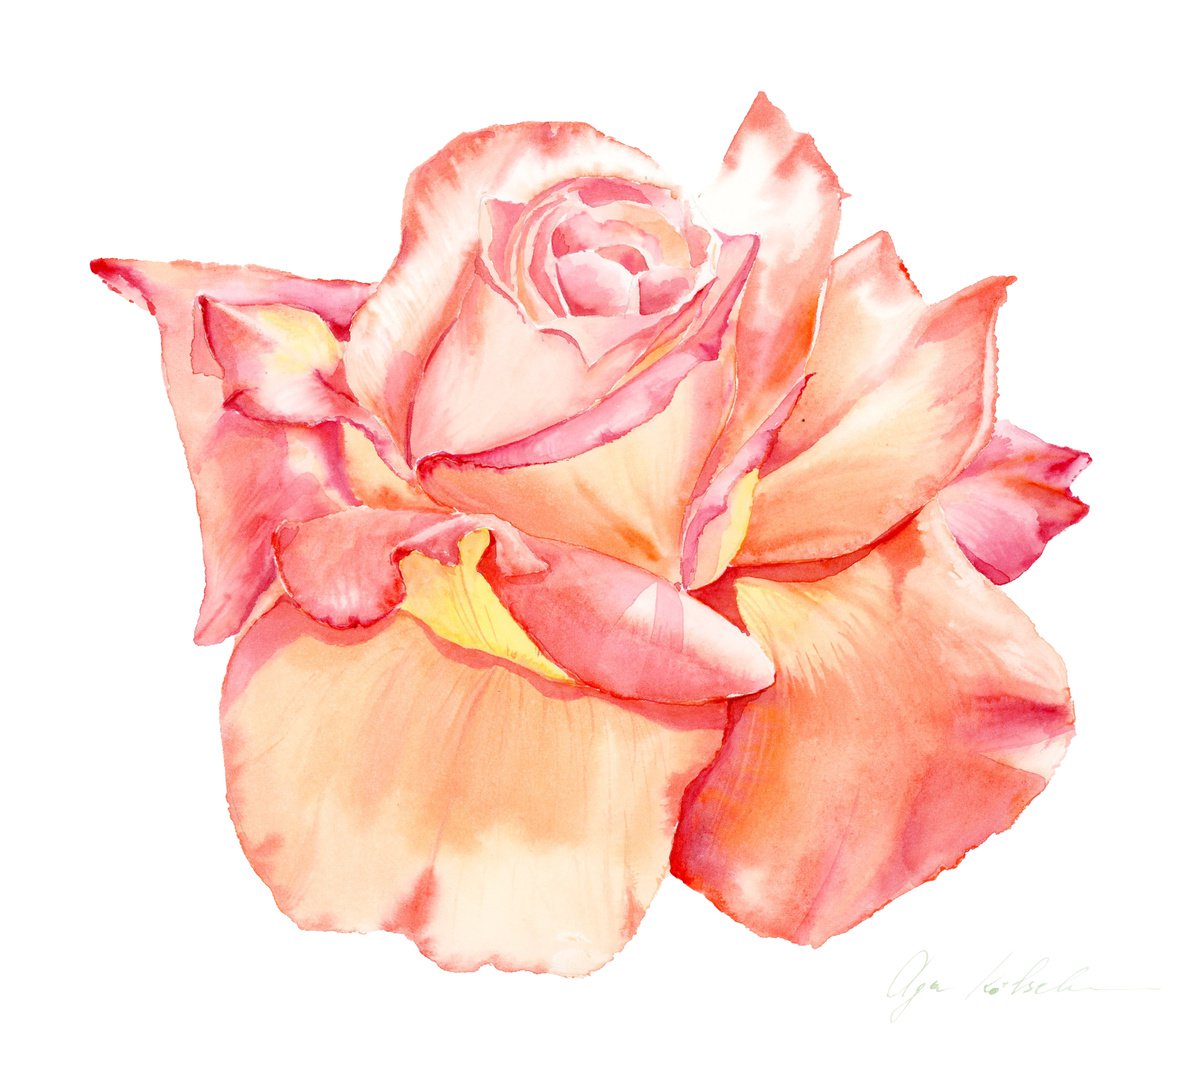 Sweet Peach rose by Olga Koelsch